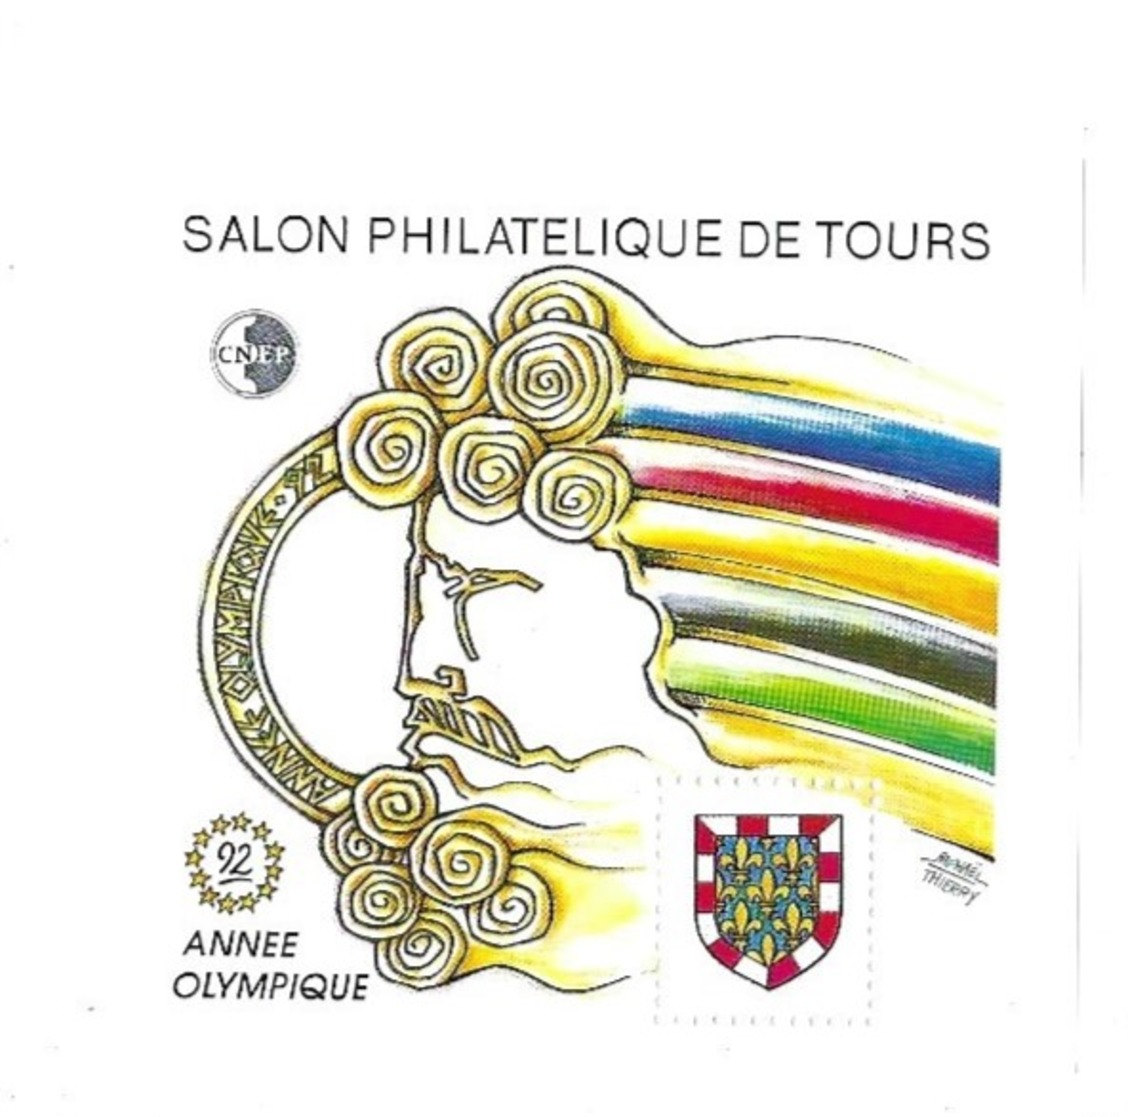 CNEP Salon Philatélique De Tours 92 - CNEP